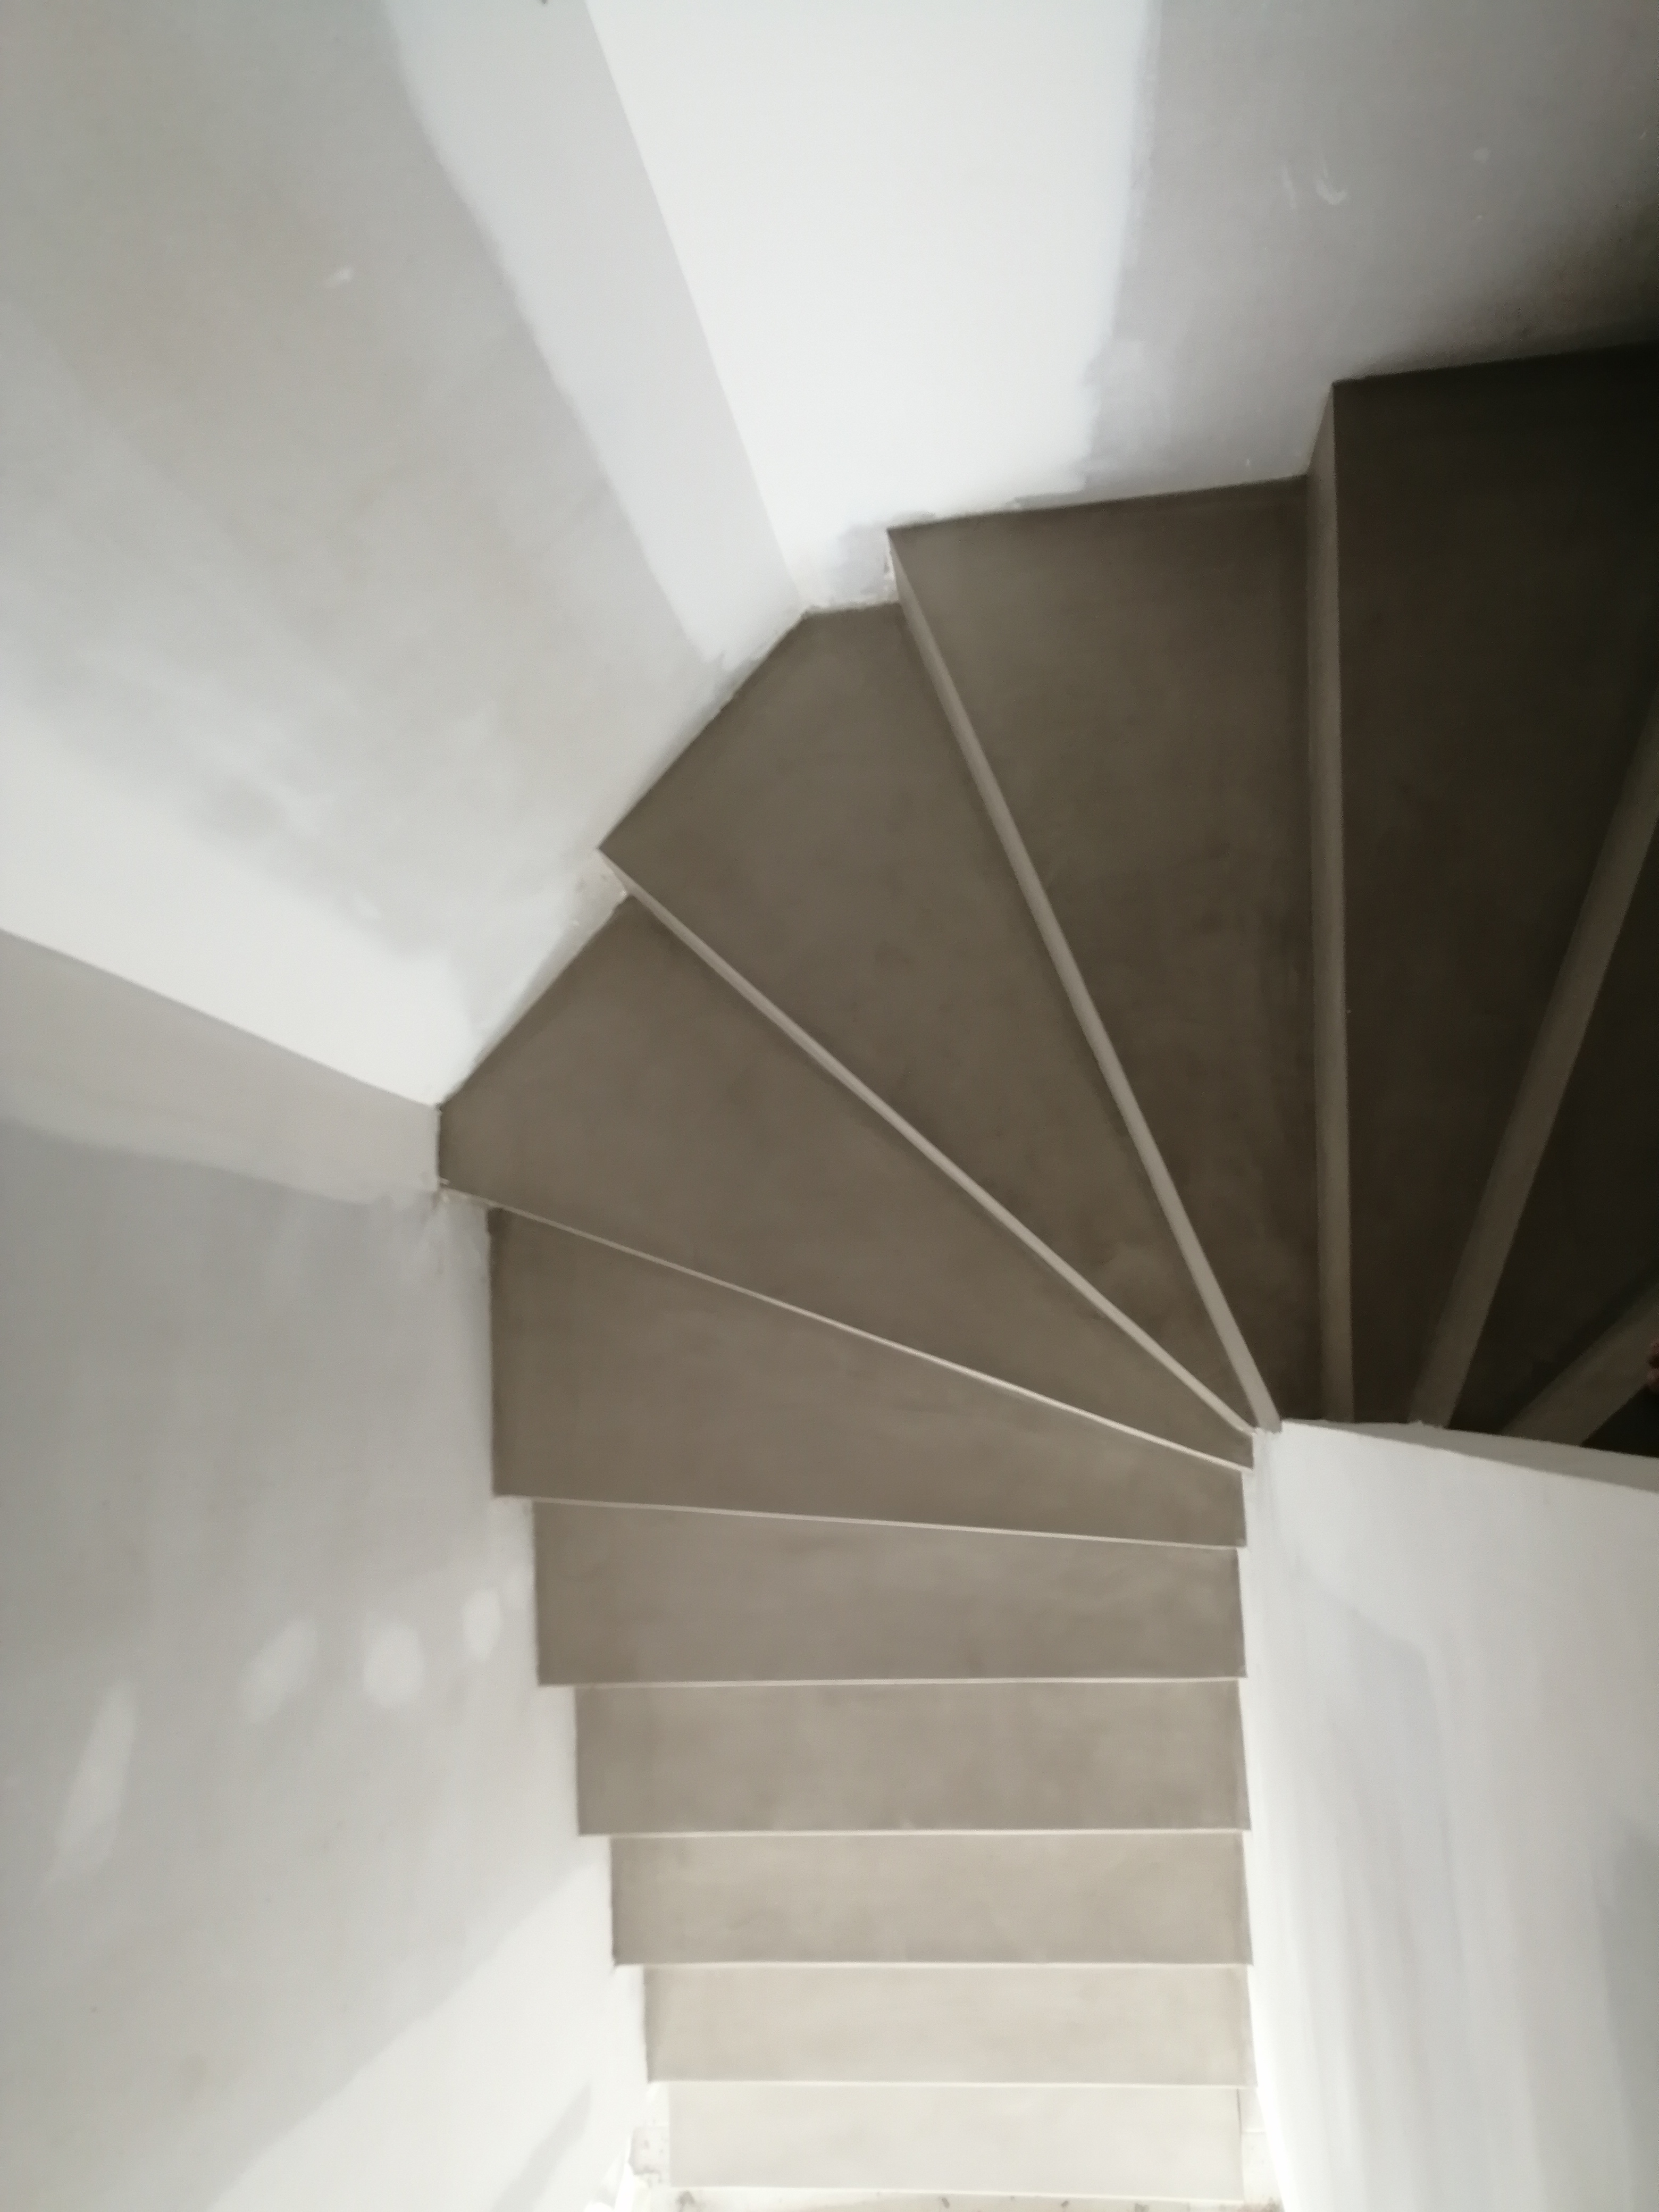 elégant escalier à paillasse deux quart tournant en béton ciré vernis soyeux couleur galet original à Clapier dans le département de l herault. pour un architecte